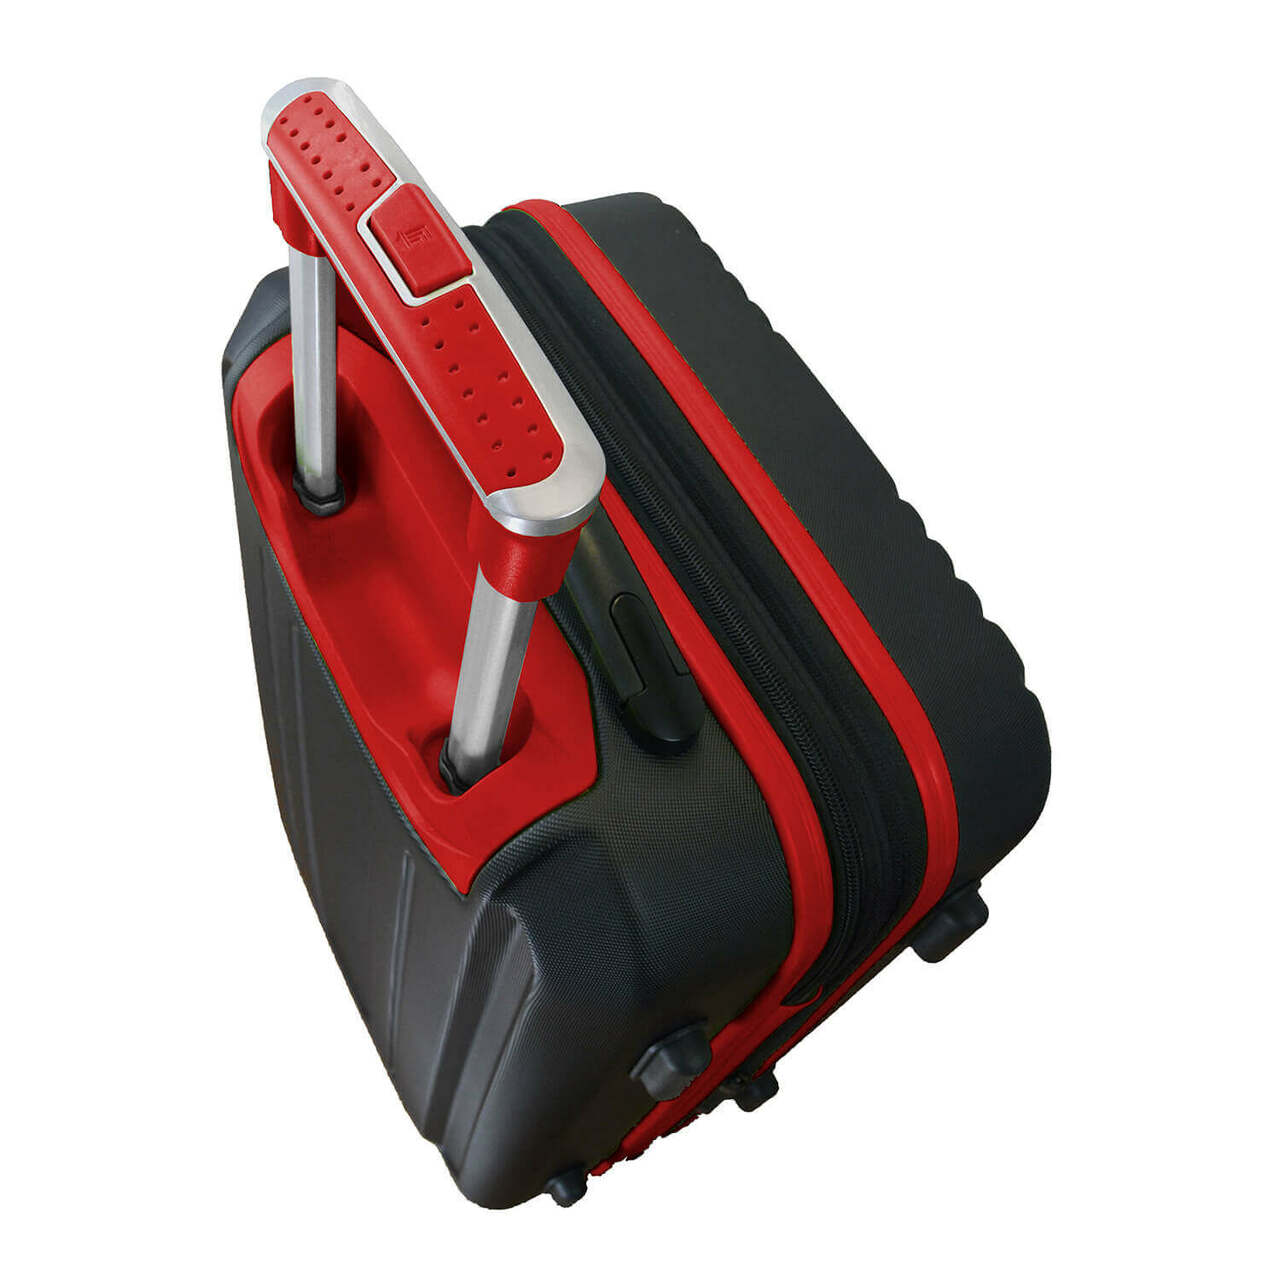 Hawks Carry On Spinner Luggage | Atlanta Hawks Hardcase Two-Tone Luggage Carry-on Spinner in Red